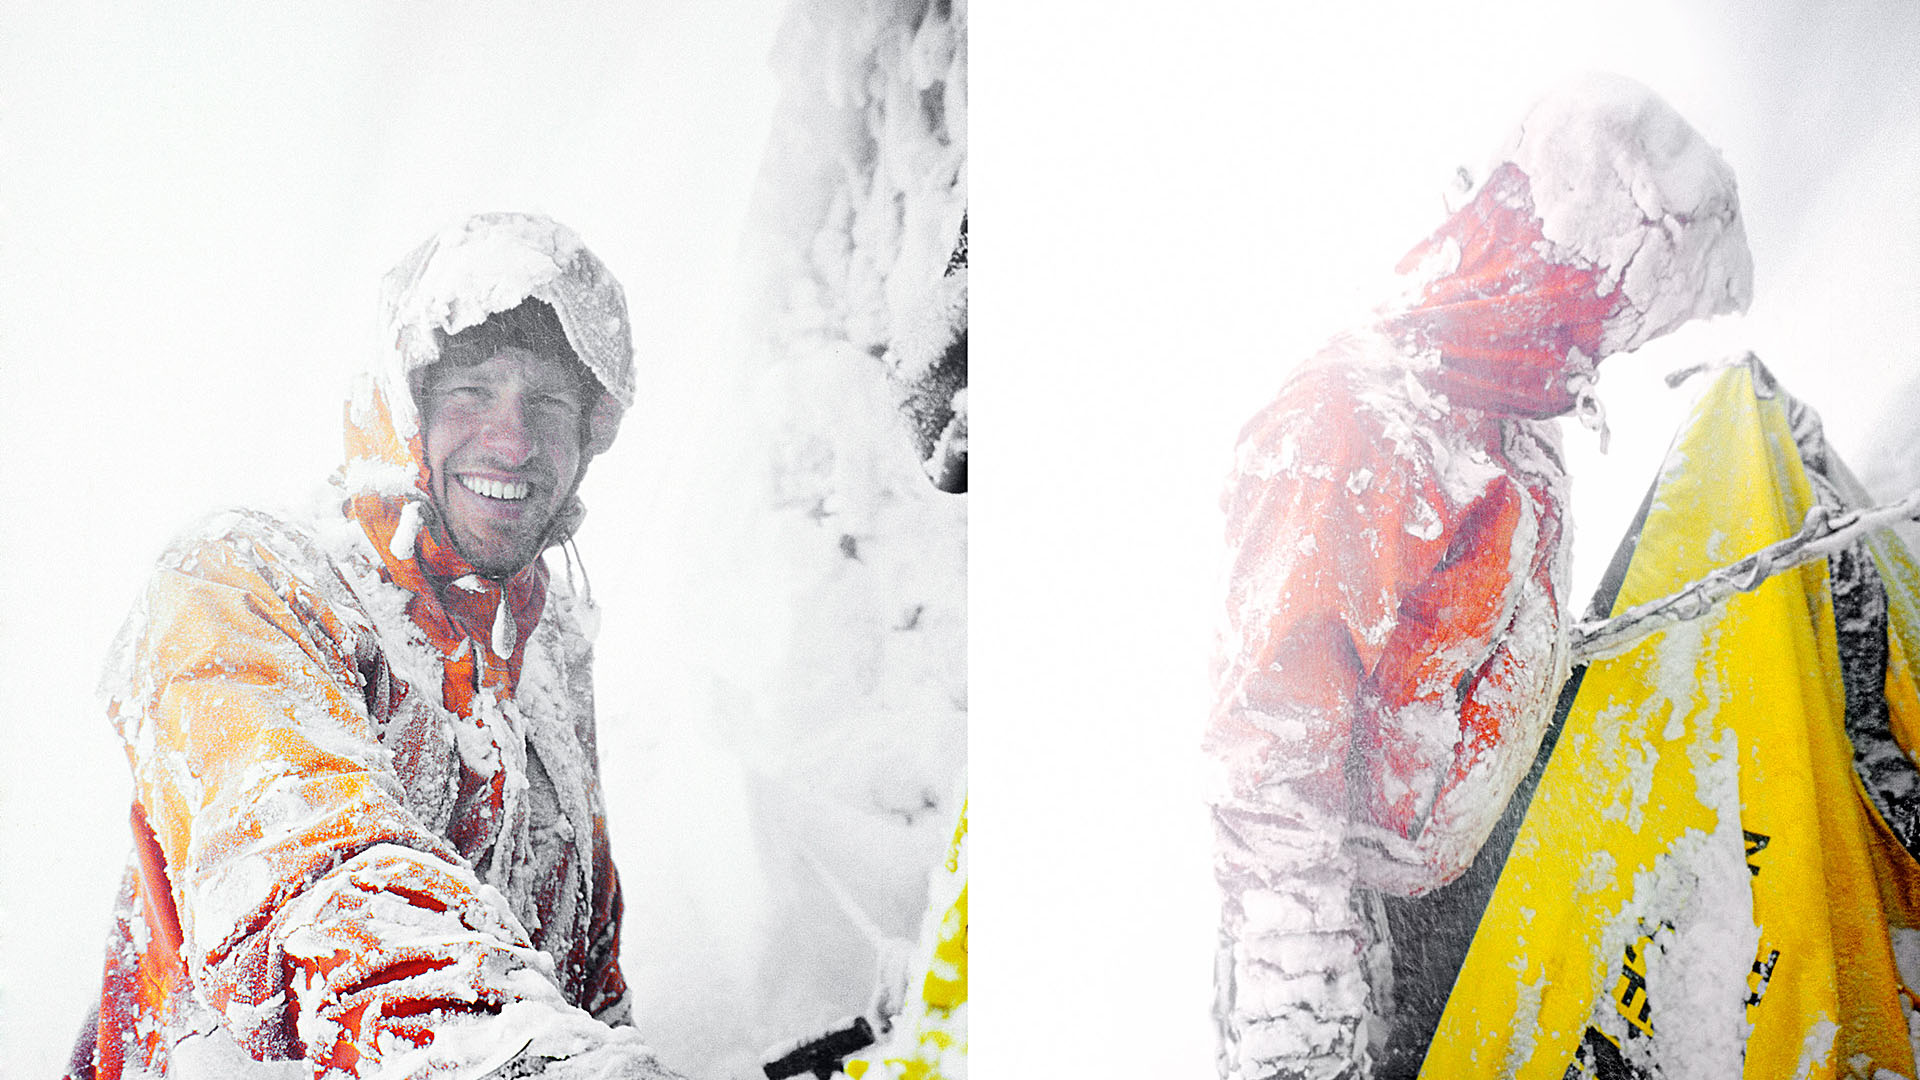 Afbreken van de tent tijdens een zware sneeuwstorm - Bergbeklimmer Melvin Redeker